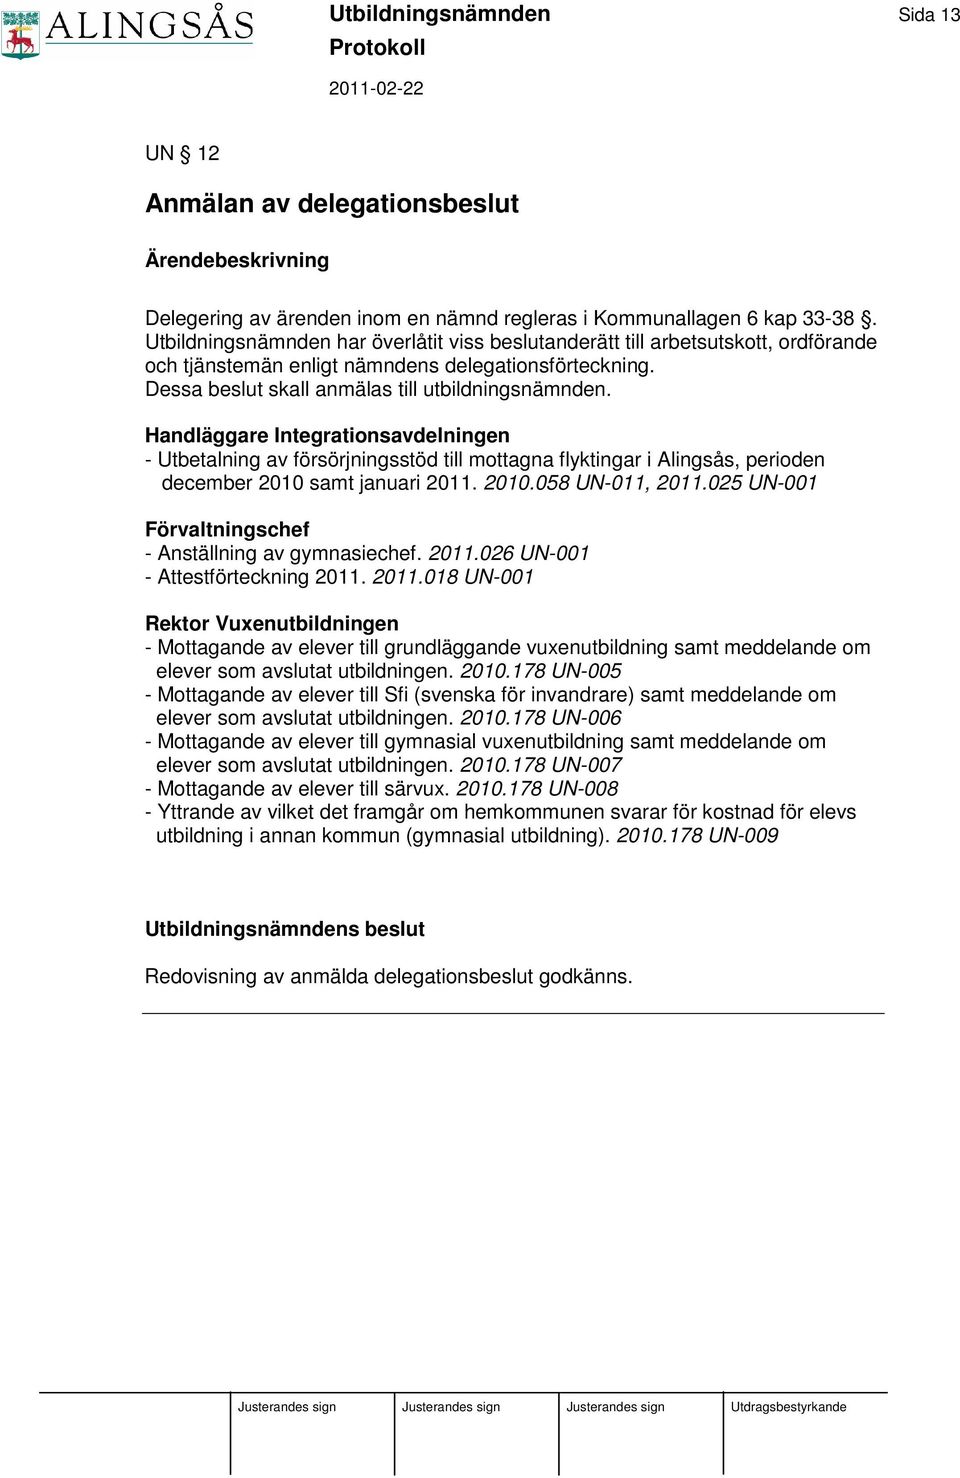 Handläggare Integrationsavdelningen - Utbetalning av försörjningsstöd till mottagna flyktingar i Alingsås, perioden december 2010 samt januari 2011. 2010.058 UN-011, 2011.